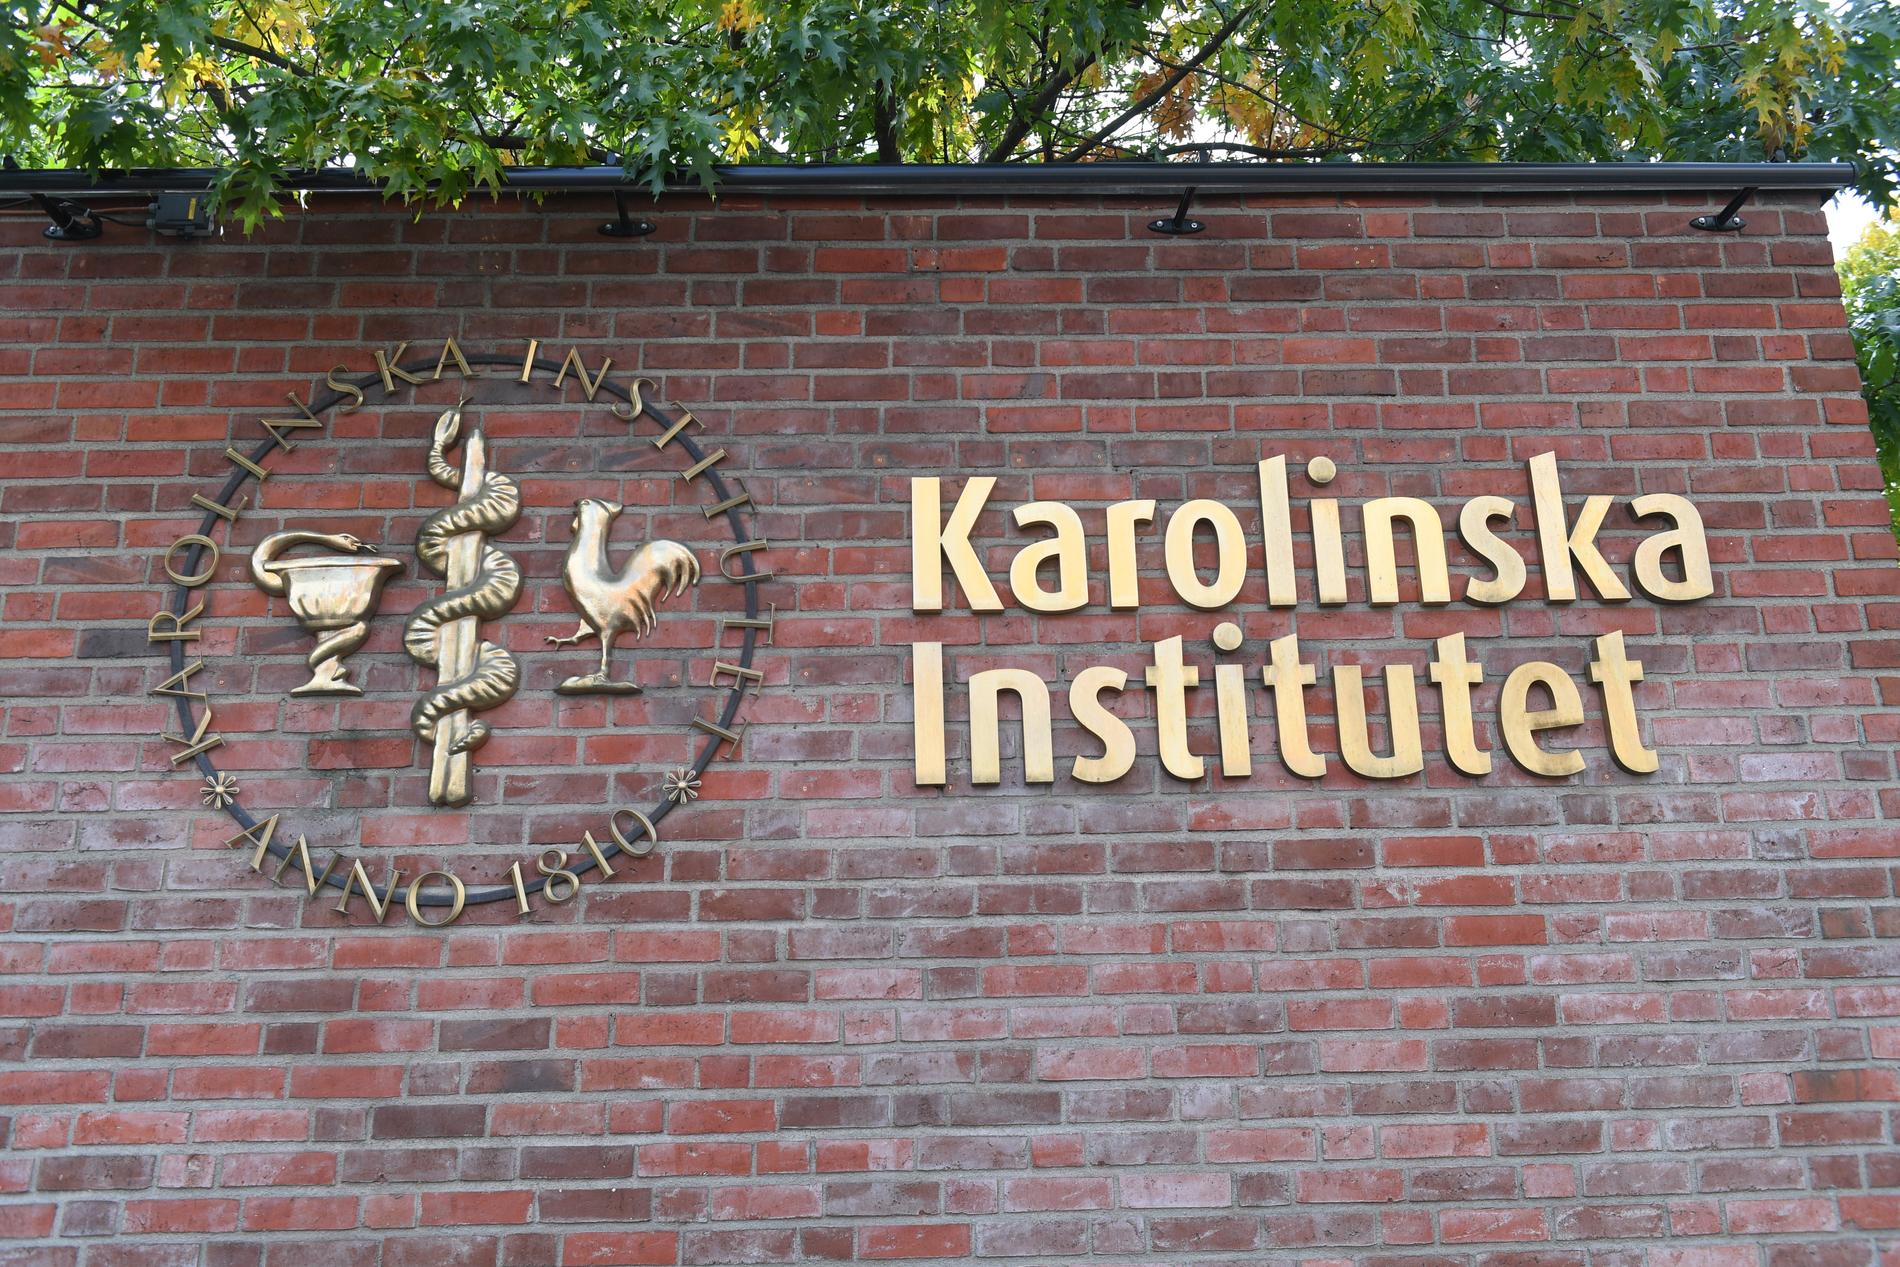 Svenska kyrkan uppmanas att be Karolinska institutet återbörda finska kranier. Arkivbild.